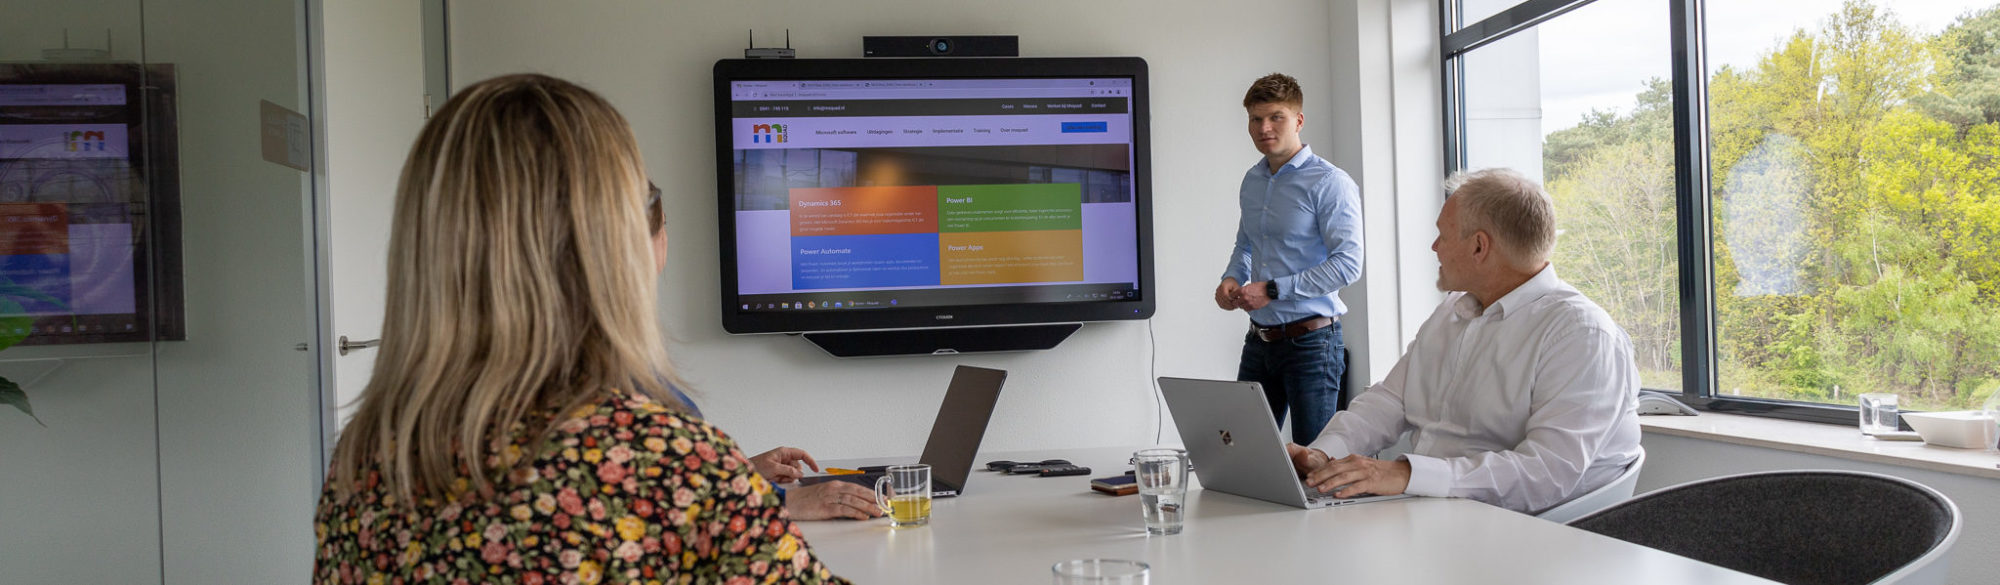 Contict lanceert met Msquad nieuwe specialistische consultancytak in business software